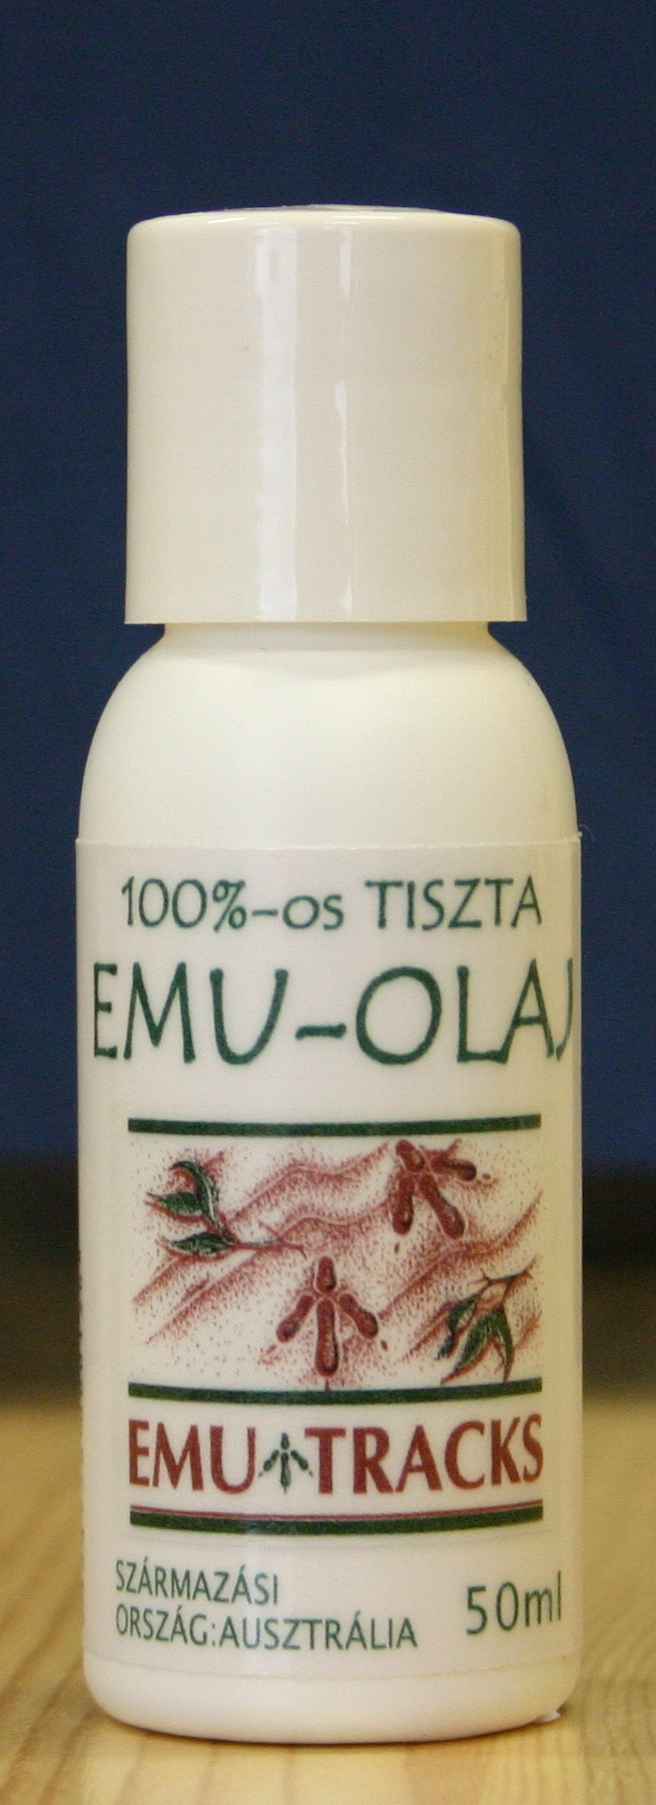 emu olaj anti aging előnyei anti aging svájci petesejtek fagyasztása